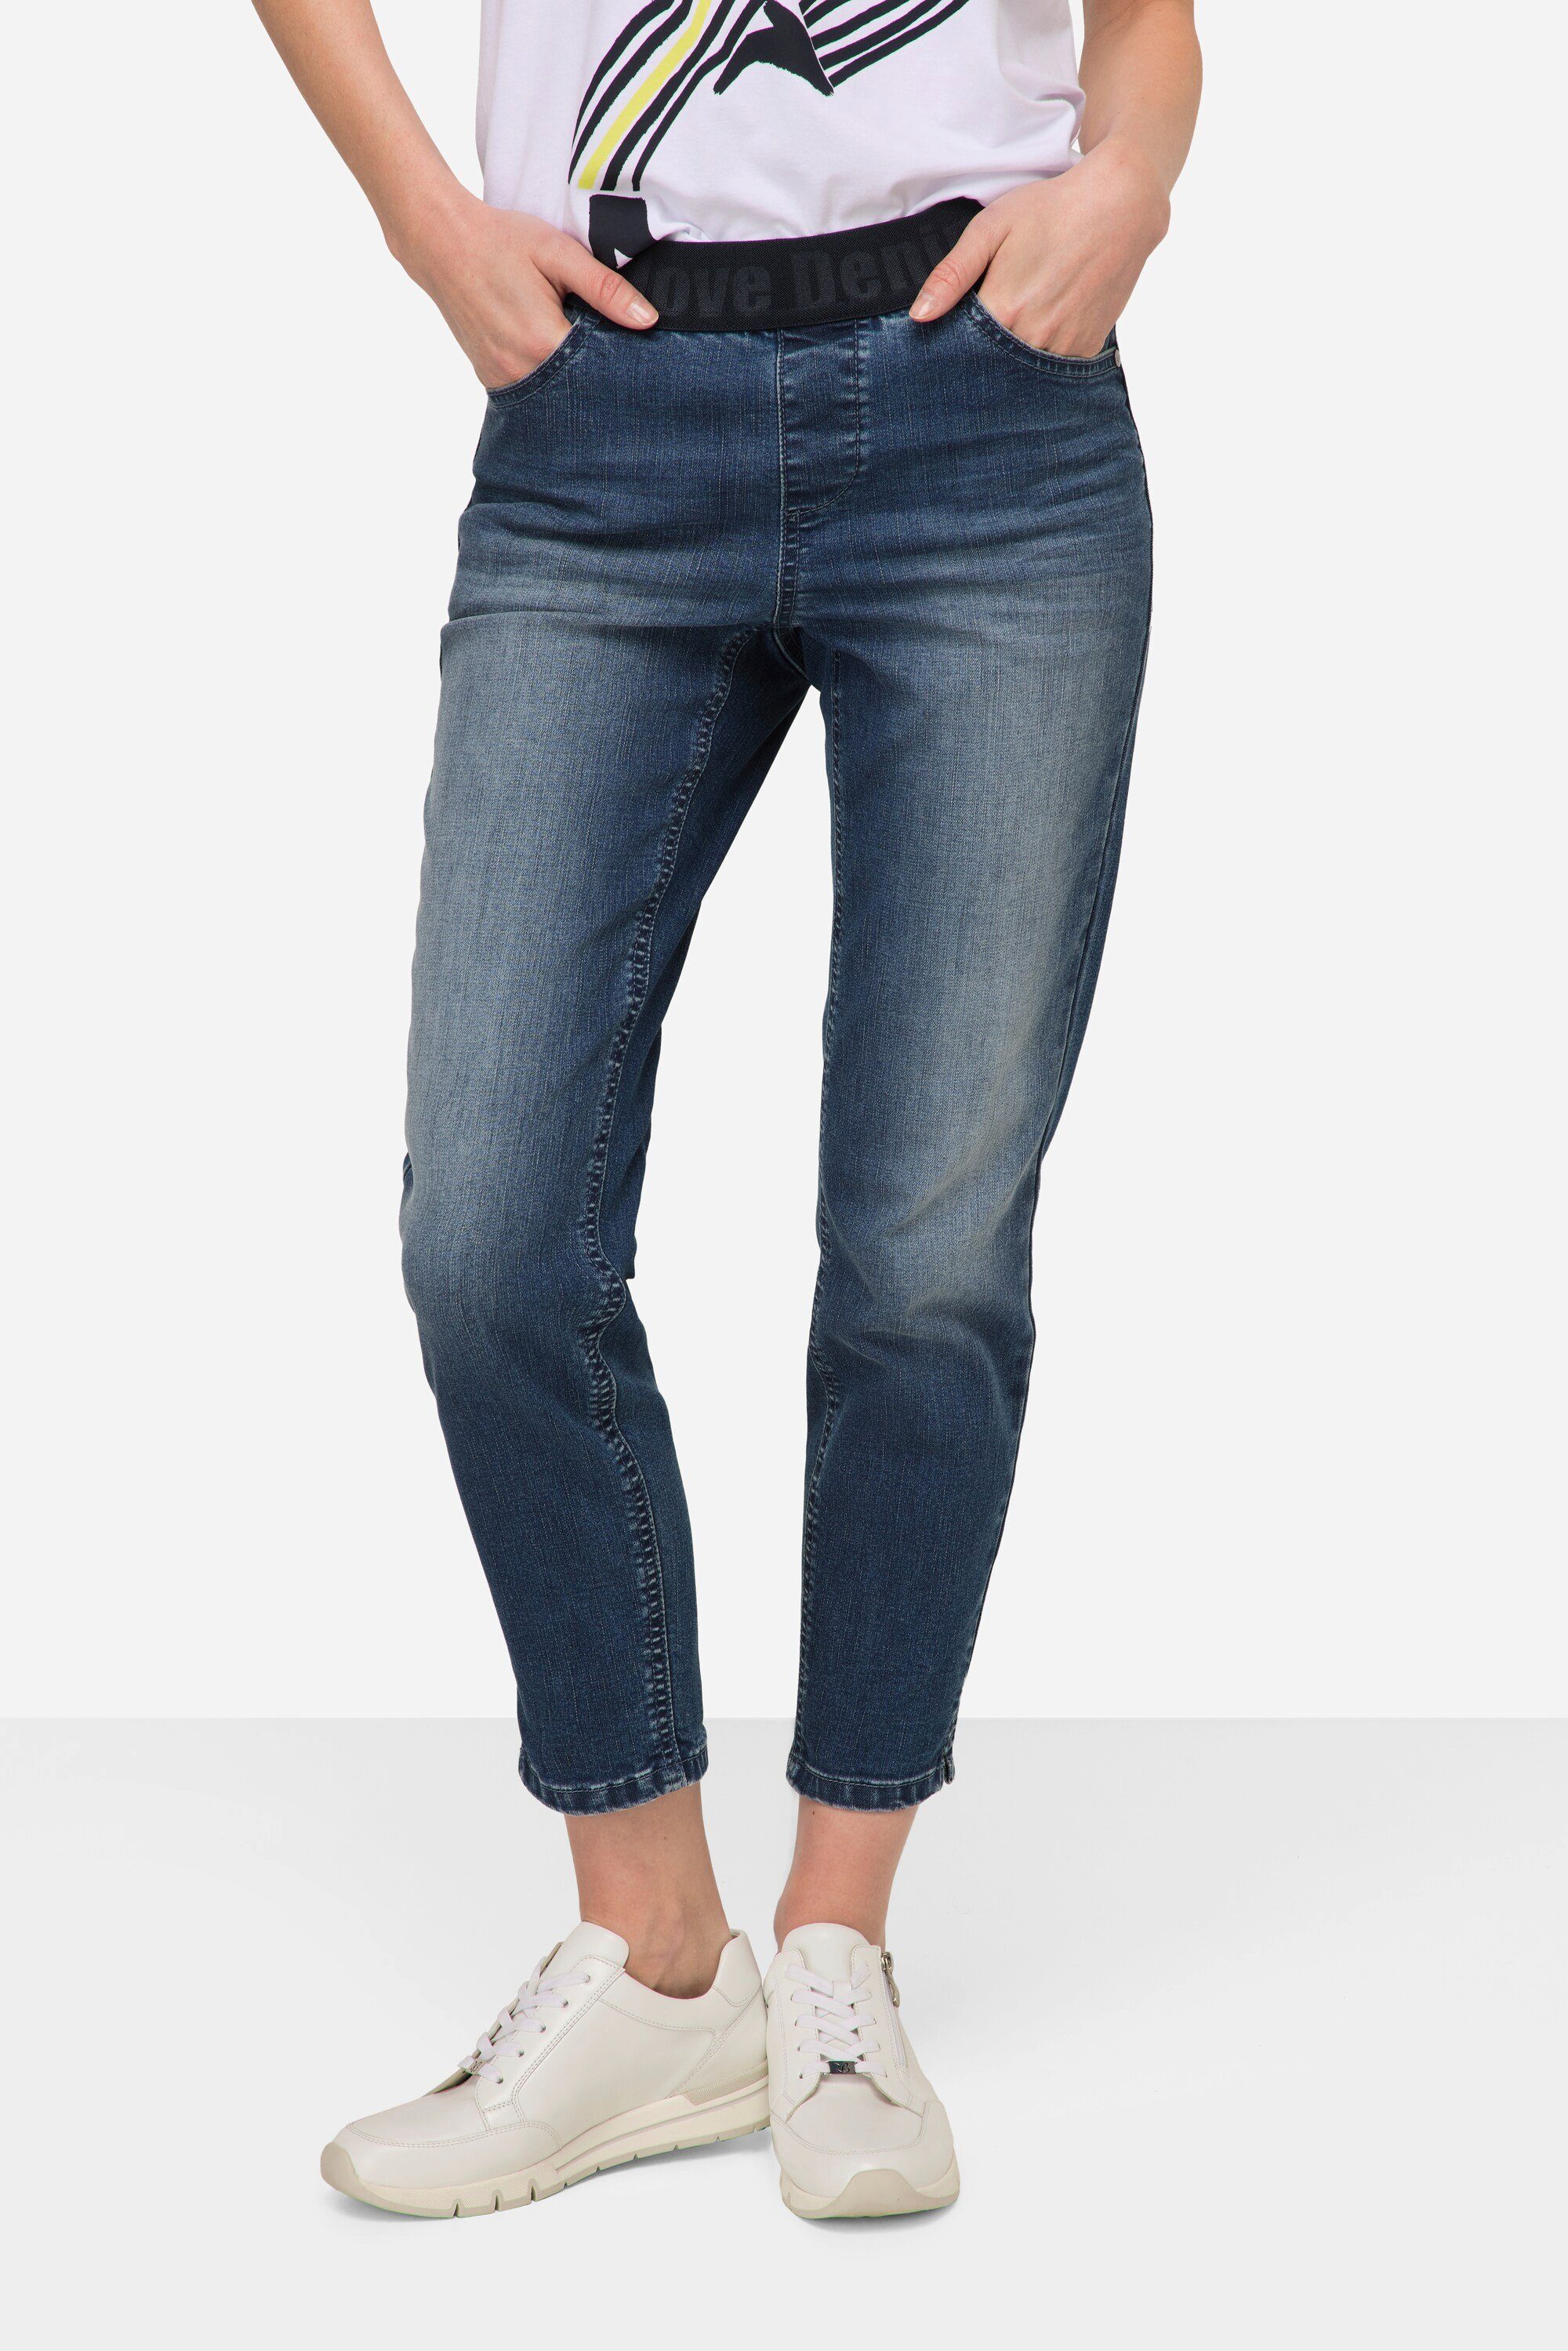 blue Pocket Regular-fit-Jeans denim 4 Laurasøn Julia Elastikbund Jeans